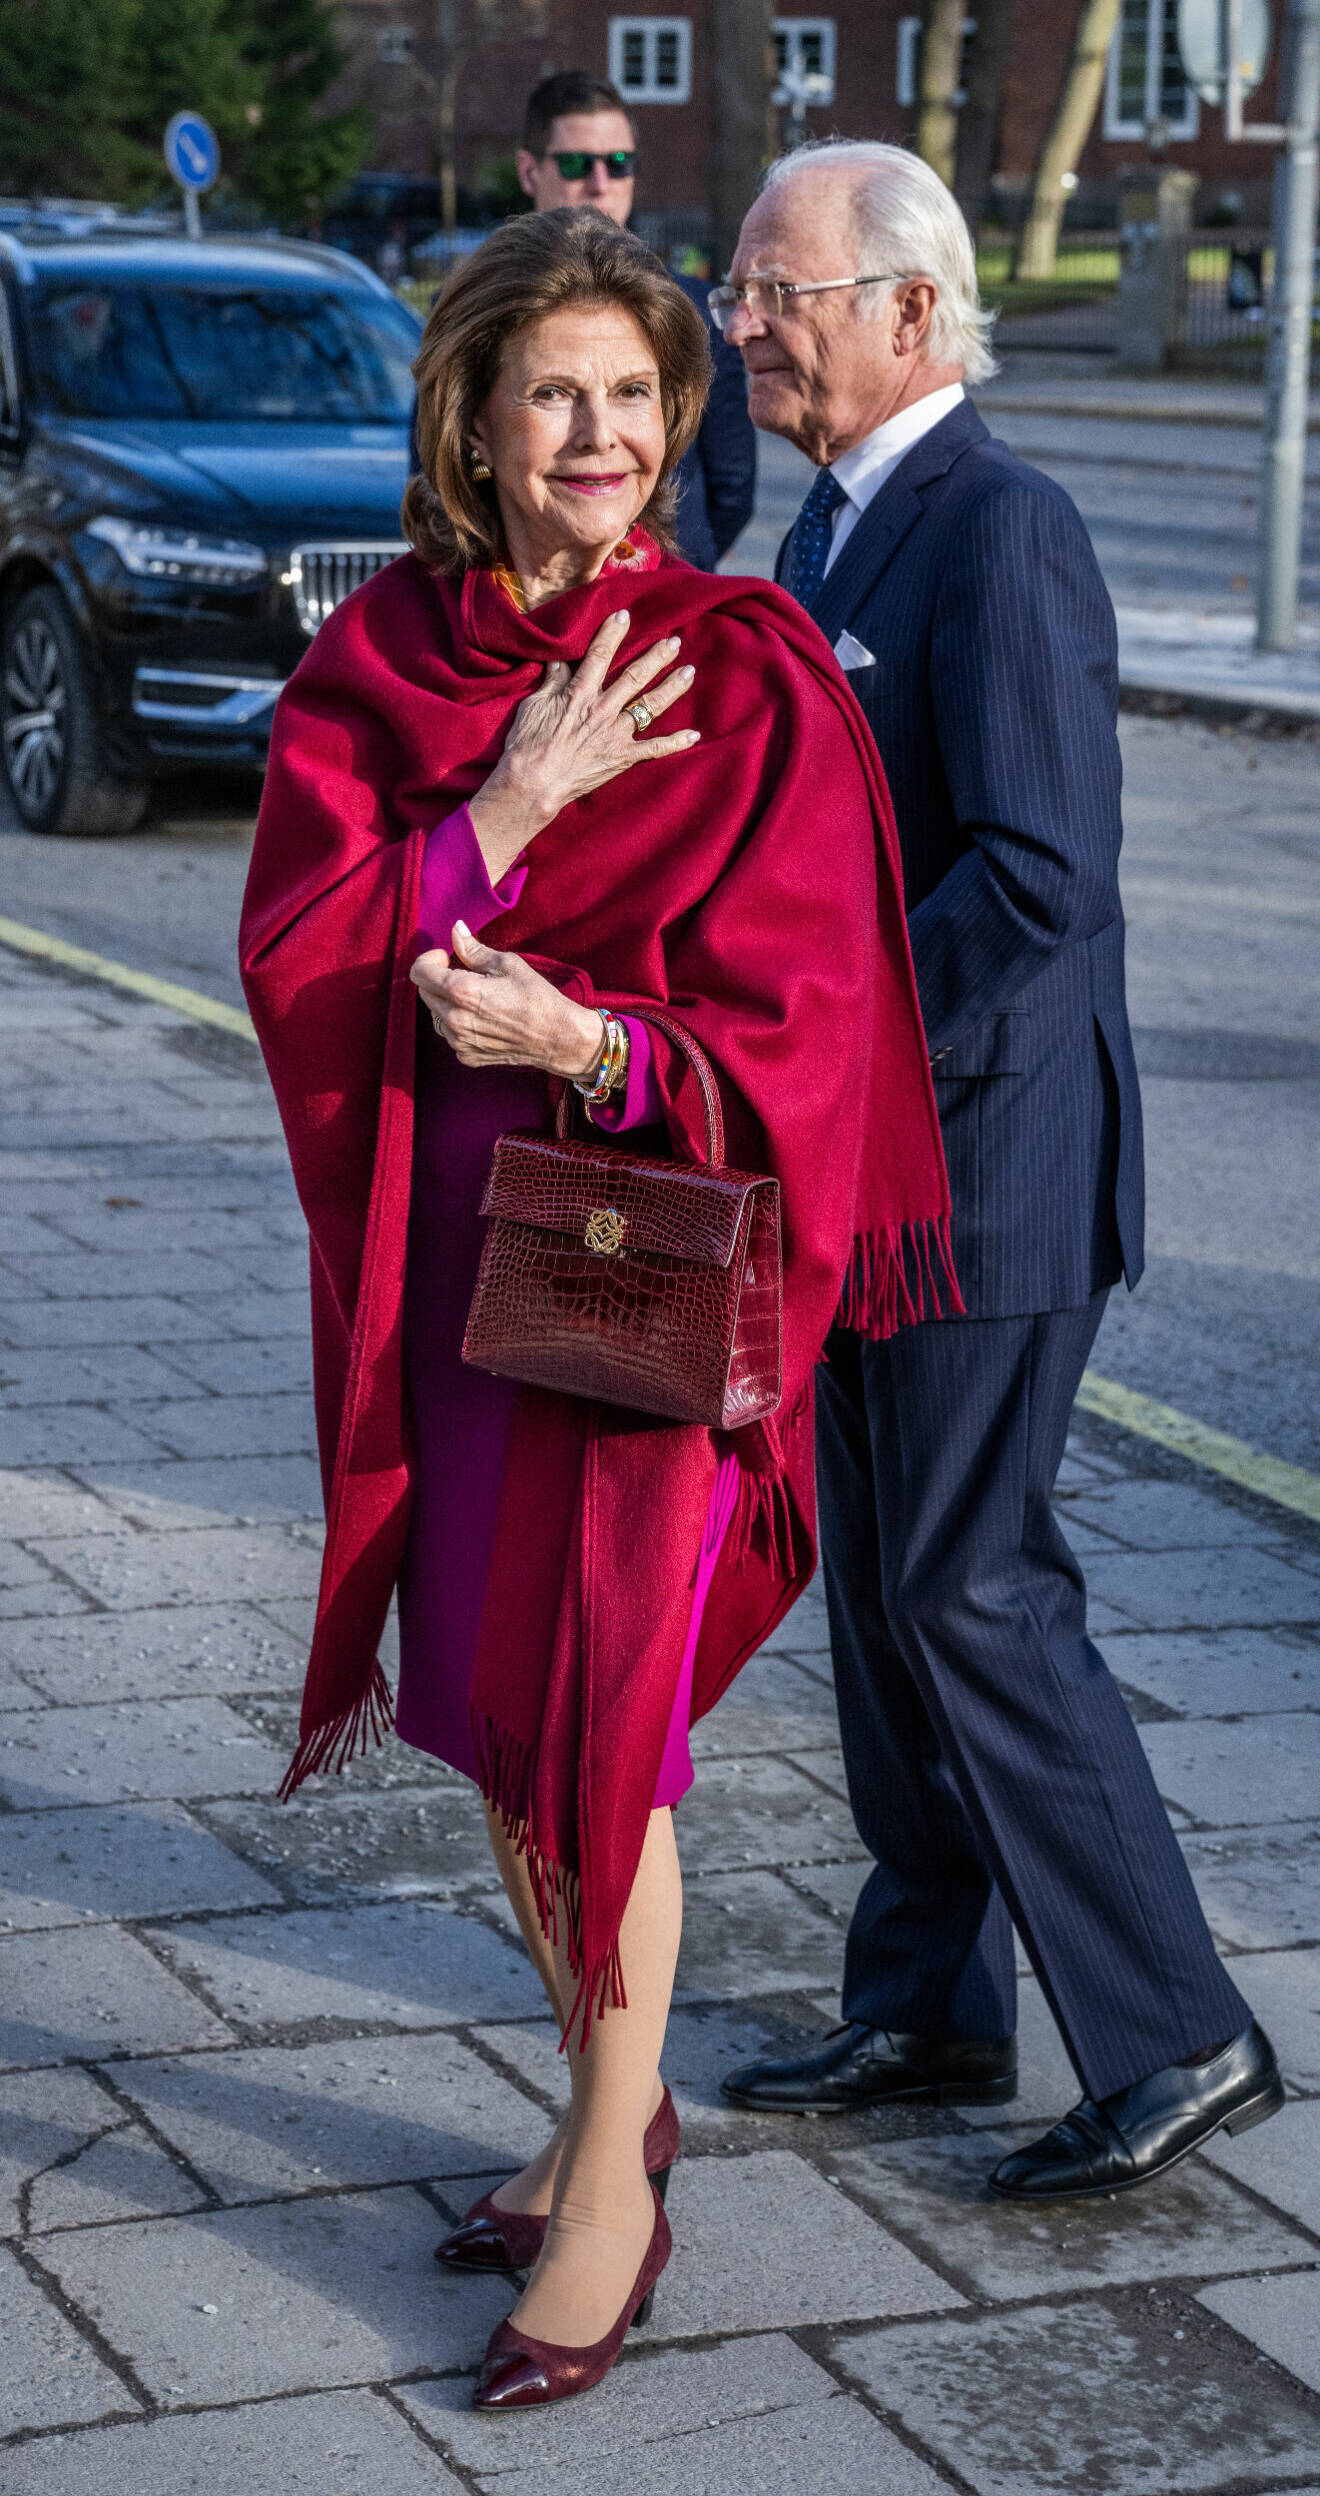 Drottning Silvia på konsert i Berwaldhallen klädd i rosa, rött och lila